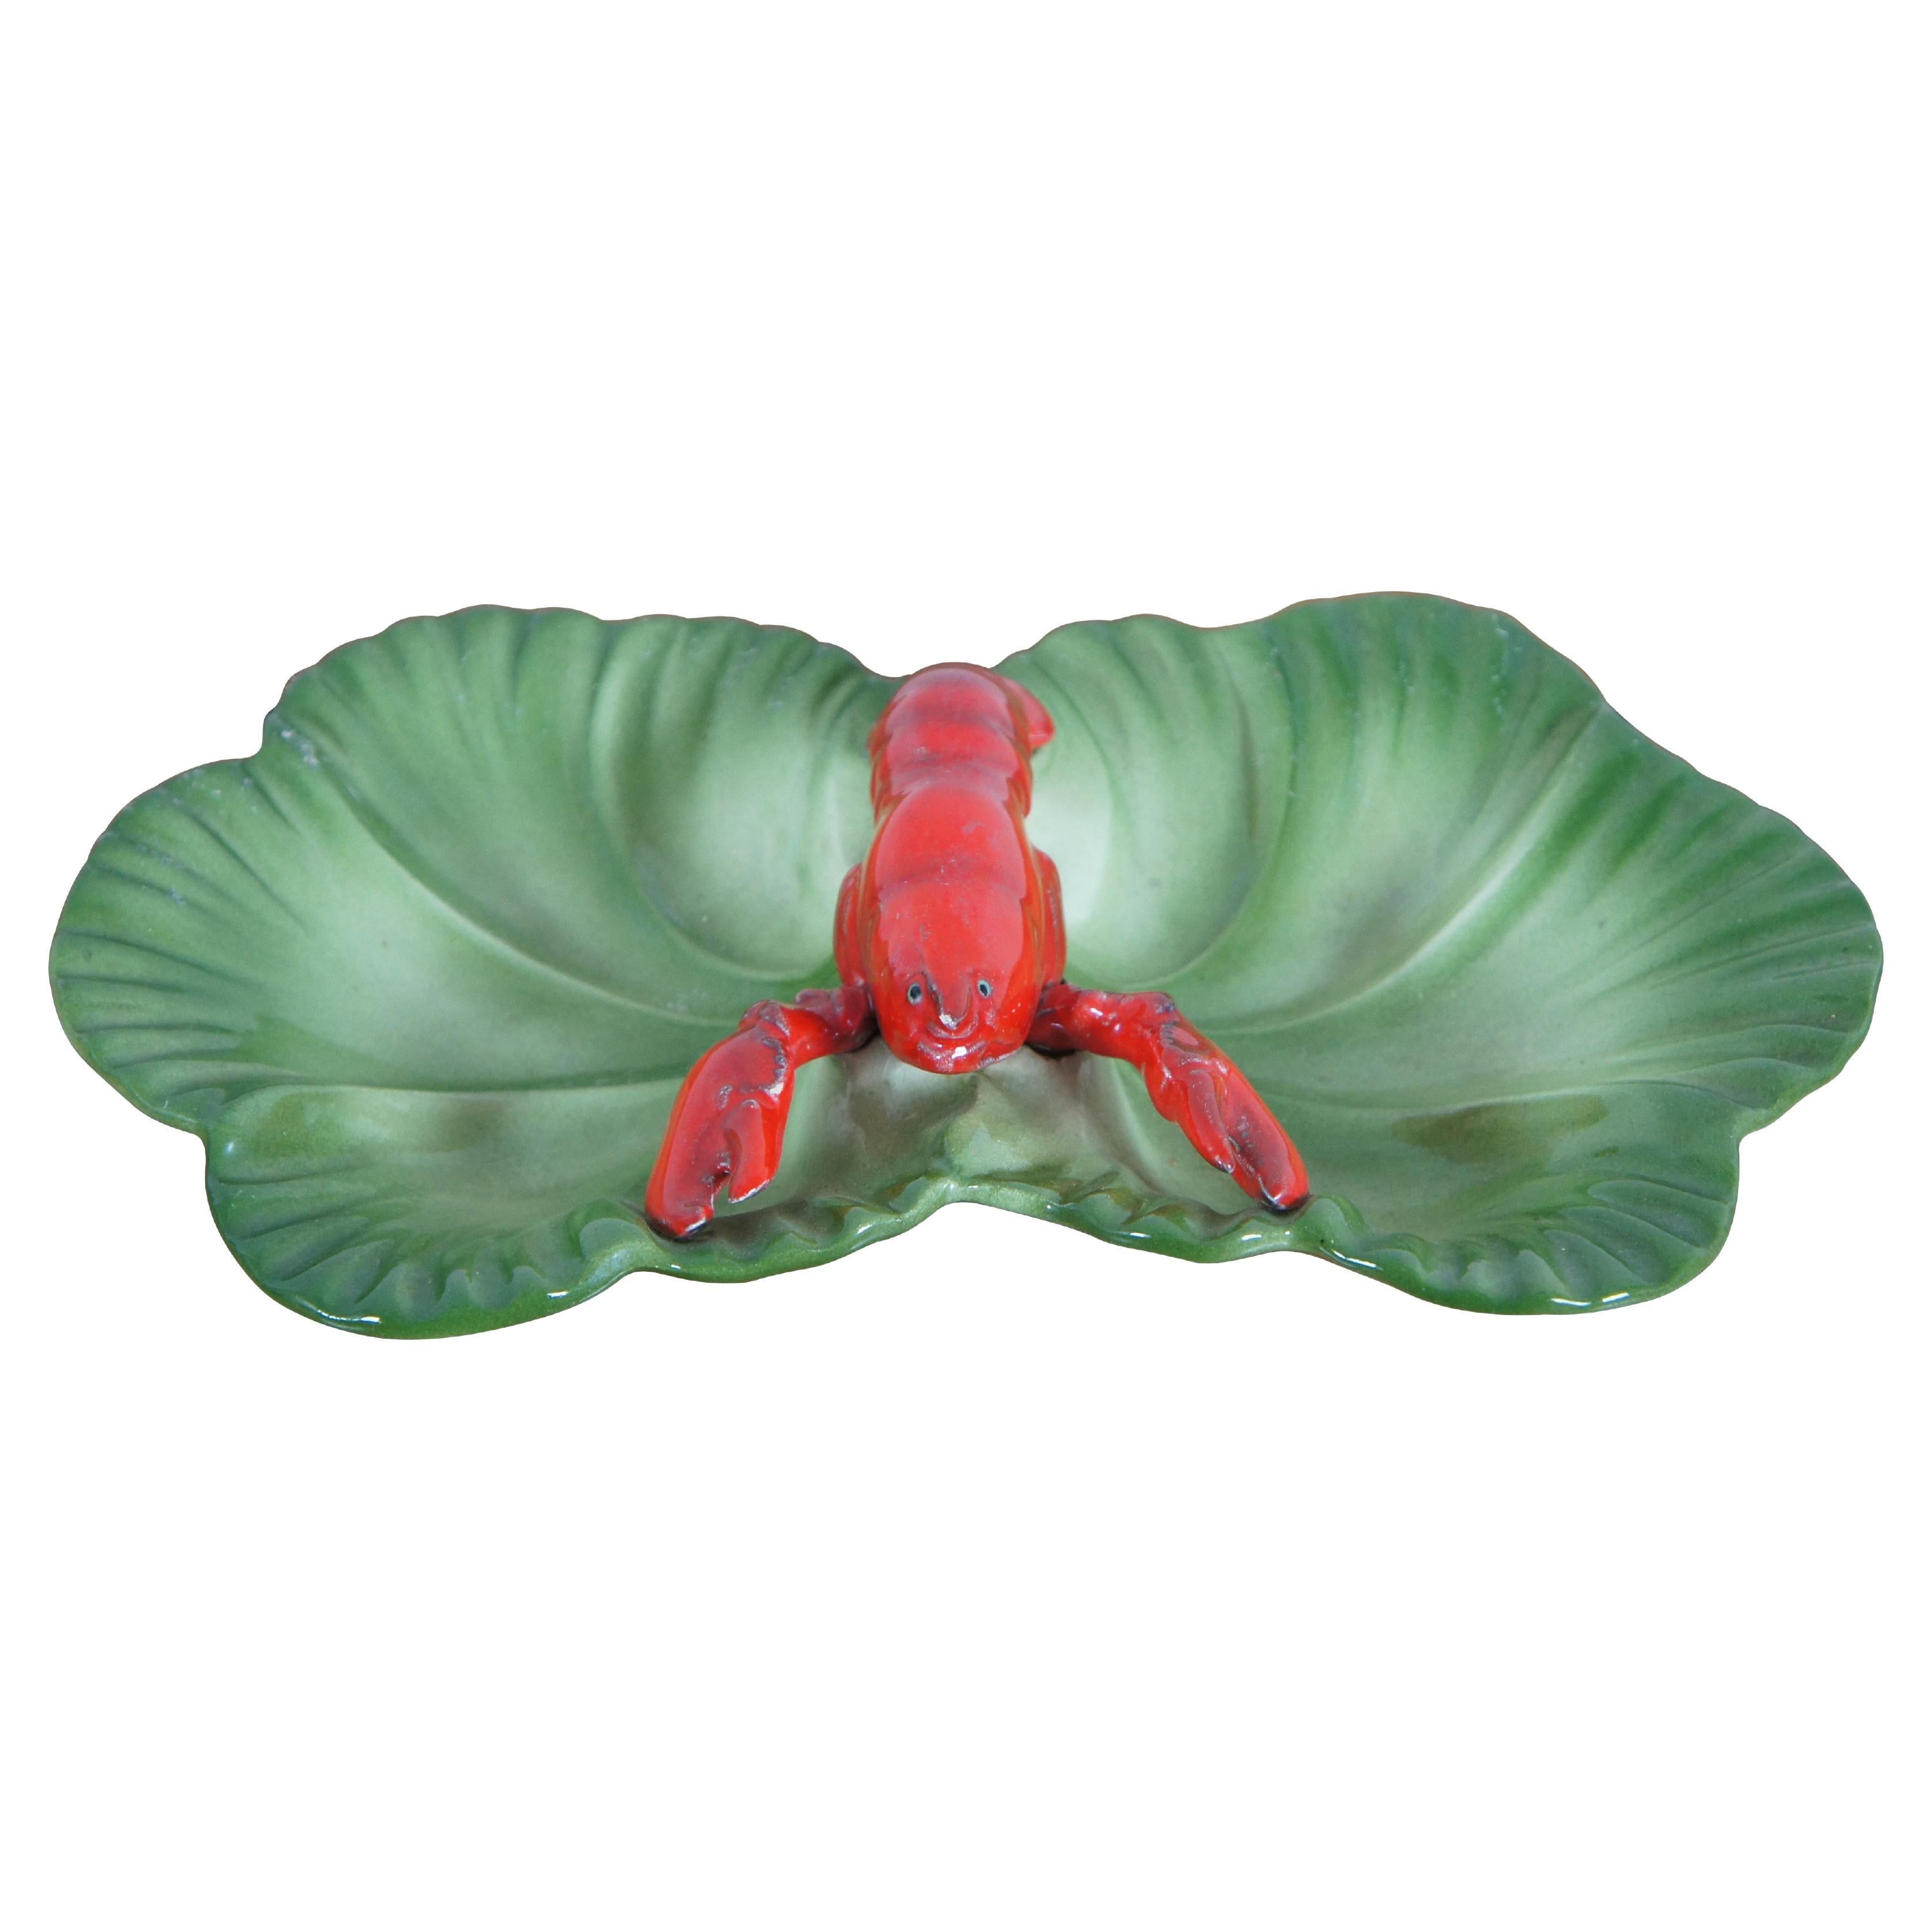 Vintage 1940s Brad Keeler Ceramic  Lobster Cabbage Leaf Divided Dish 872 12" For Sale